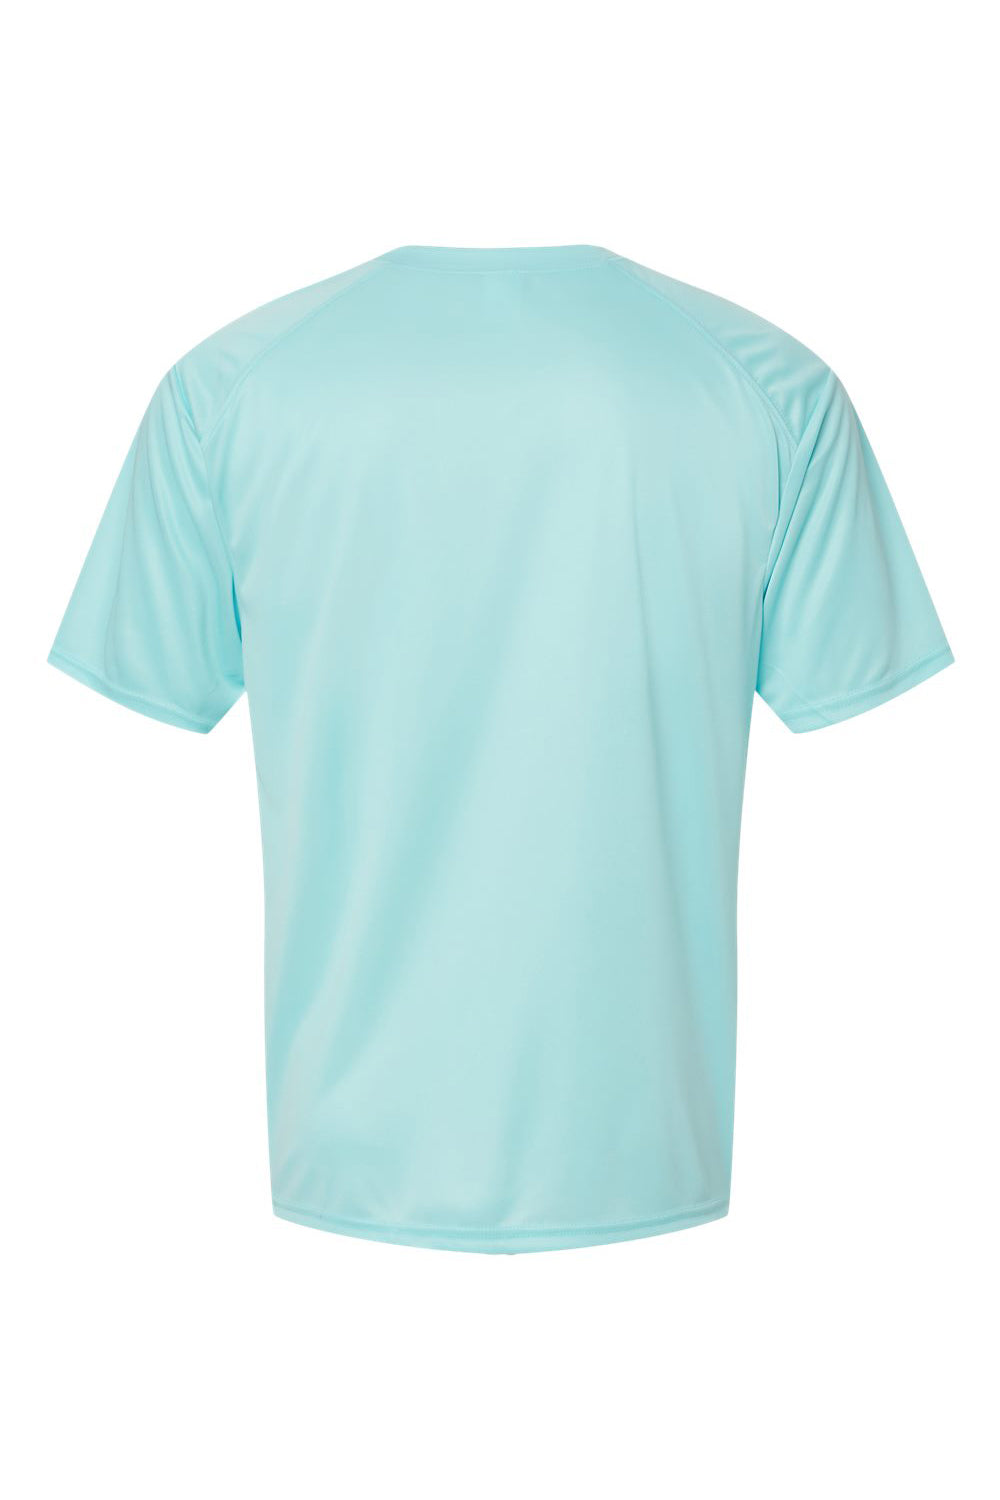 Paragon 200 Mens Islander Performance Short Sleeve Crewneck T-Shirt Aqua Blue Flat Back